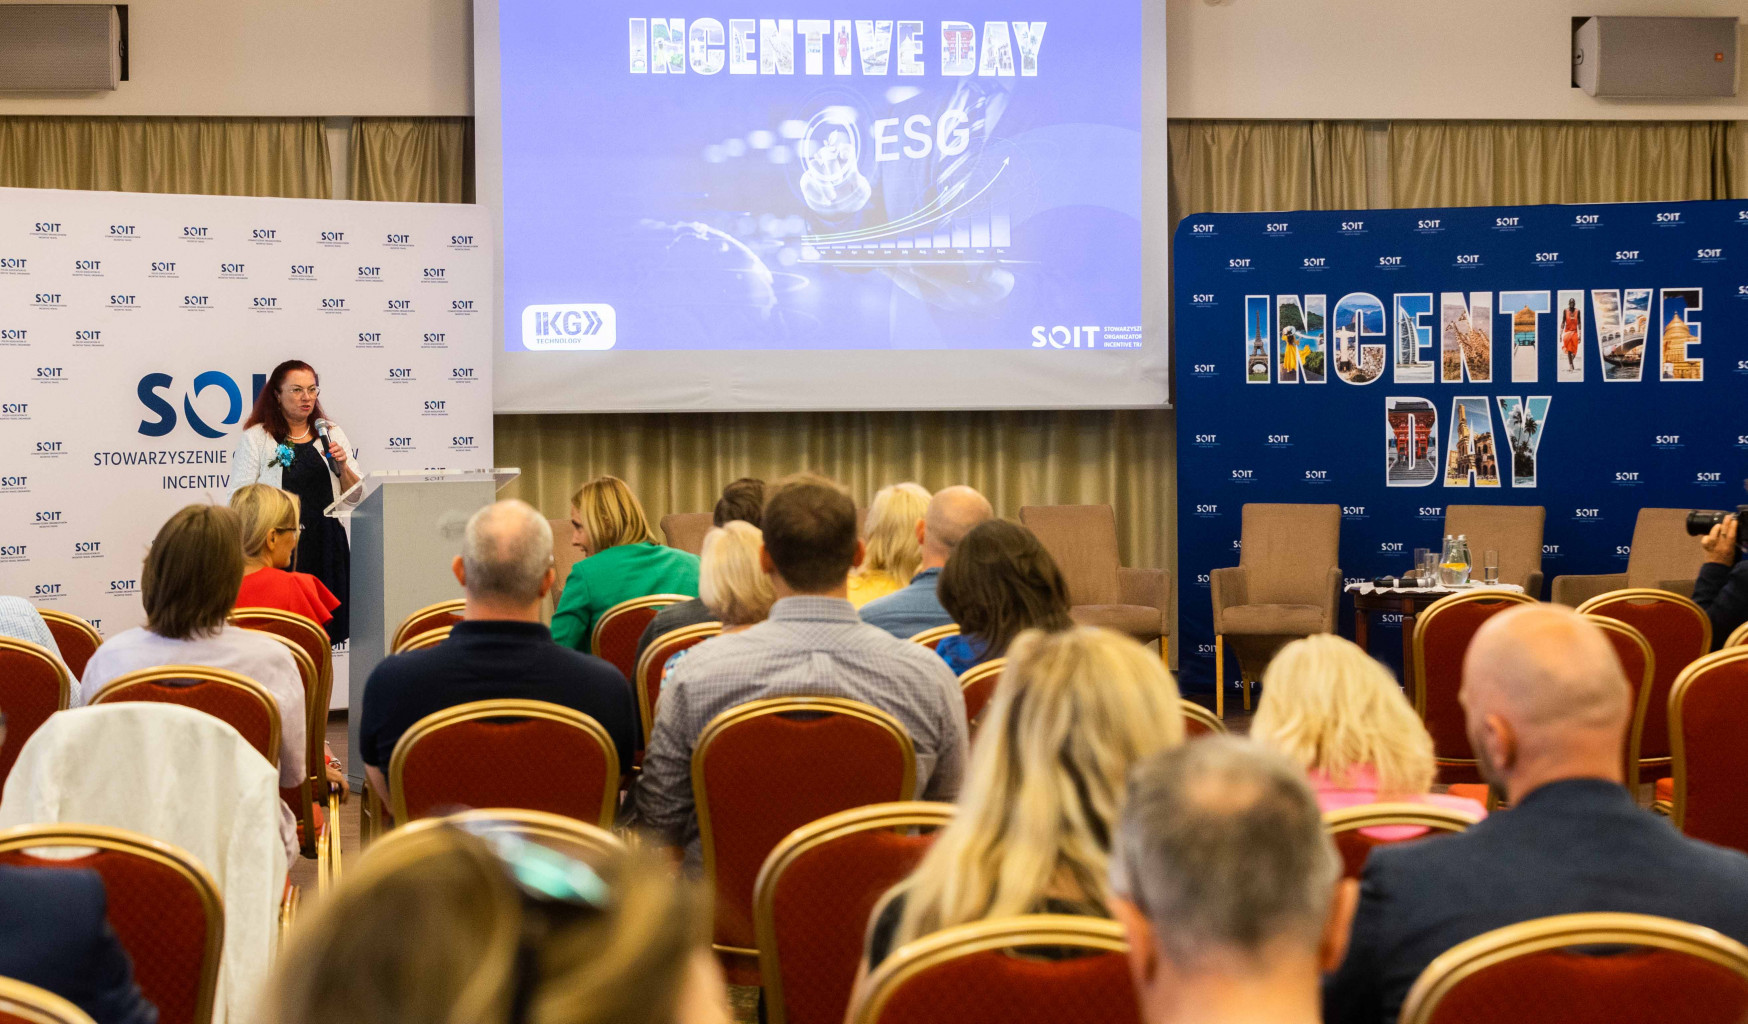 ESG incentive travel incentive day konferencja soit w warszawie